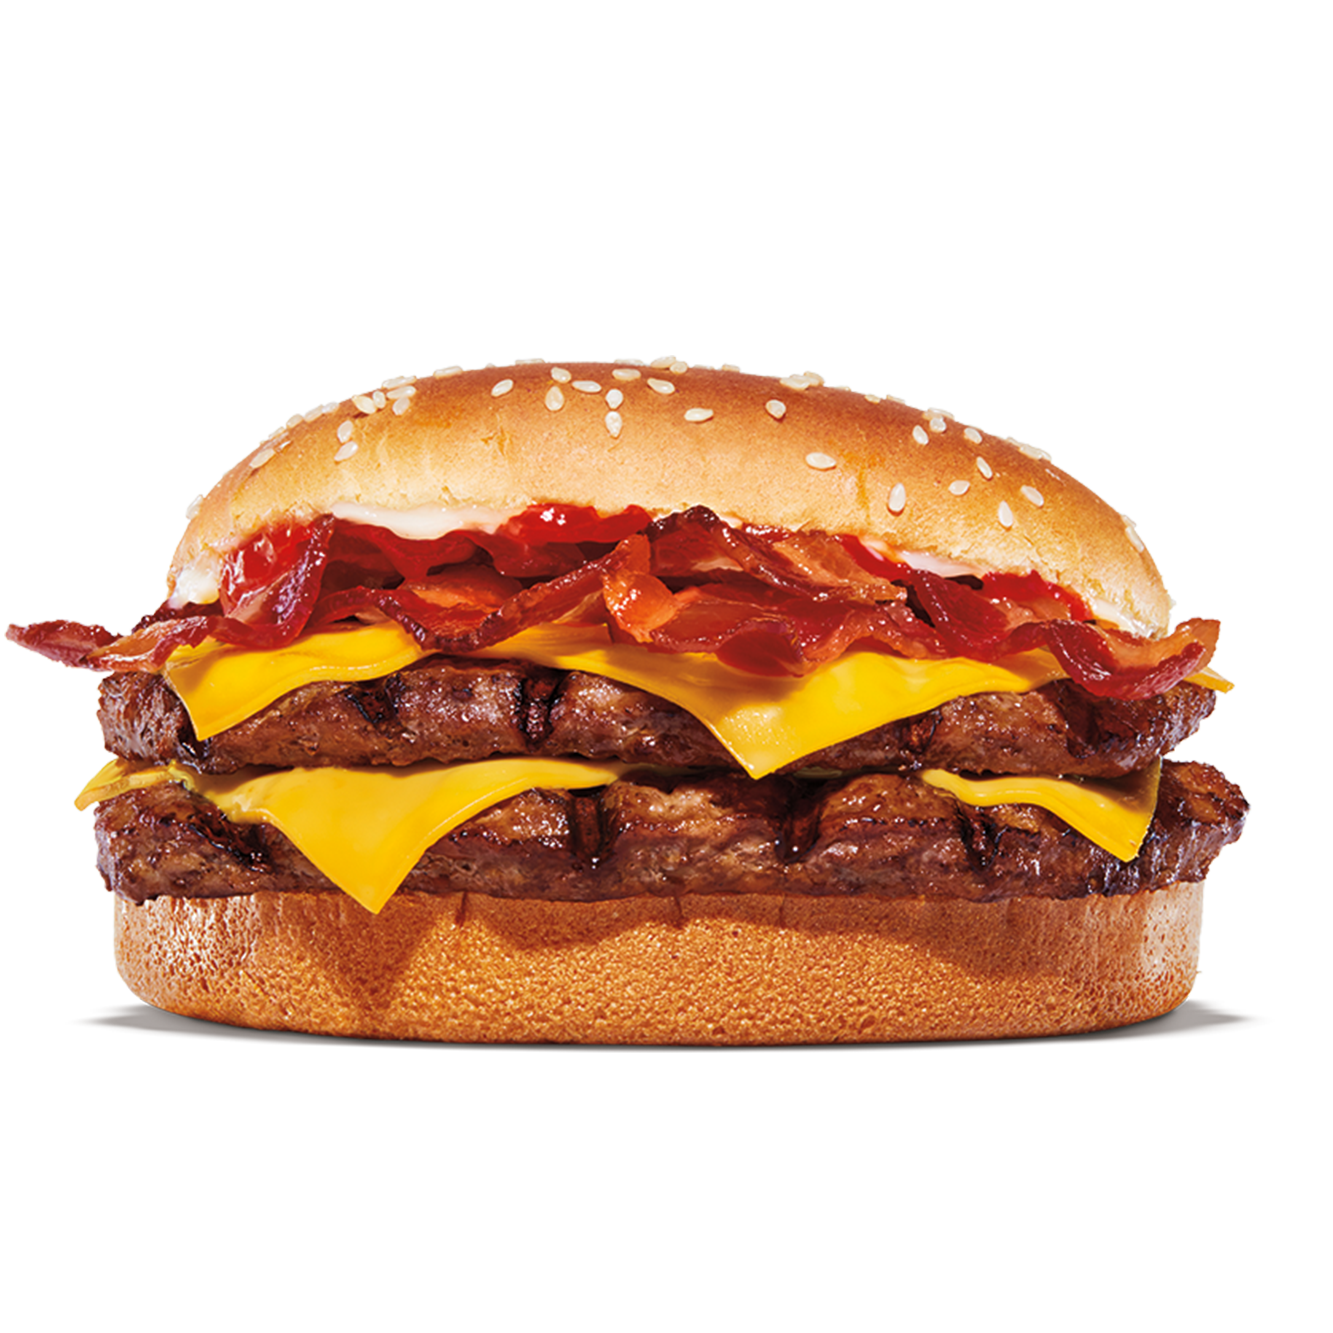 Burger King Cuyahoga Falls (330)928-0515